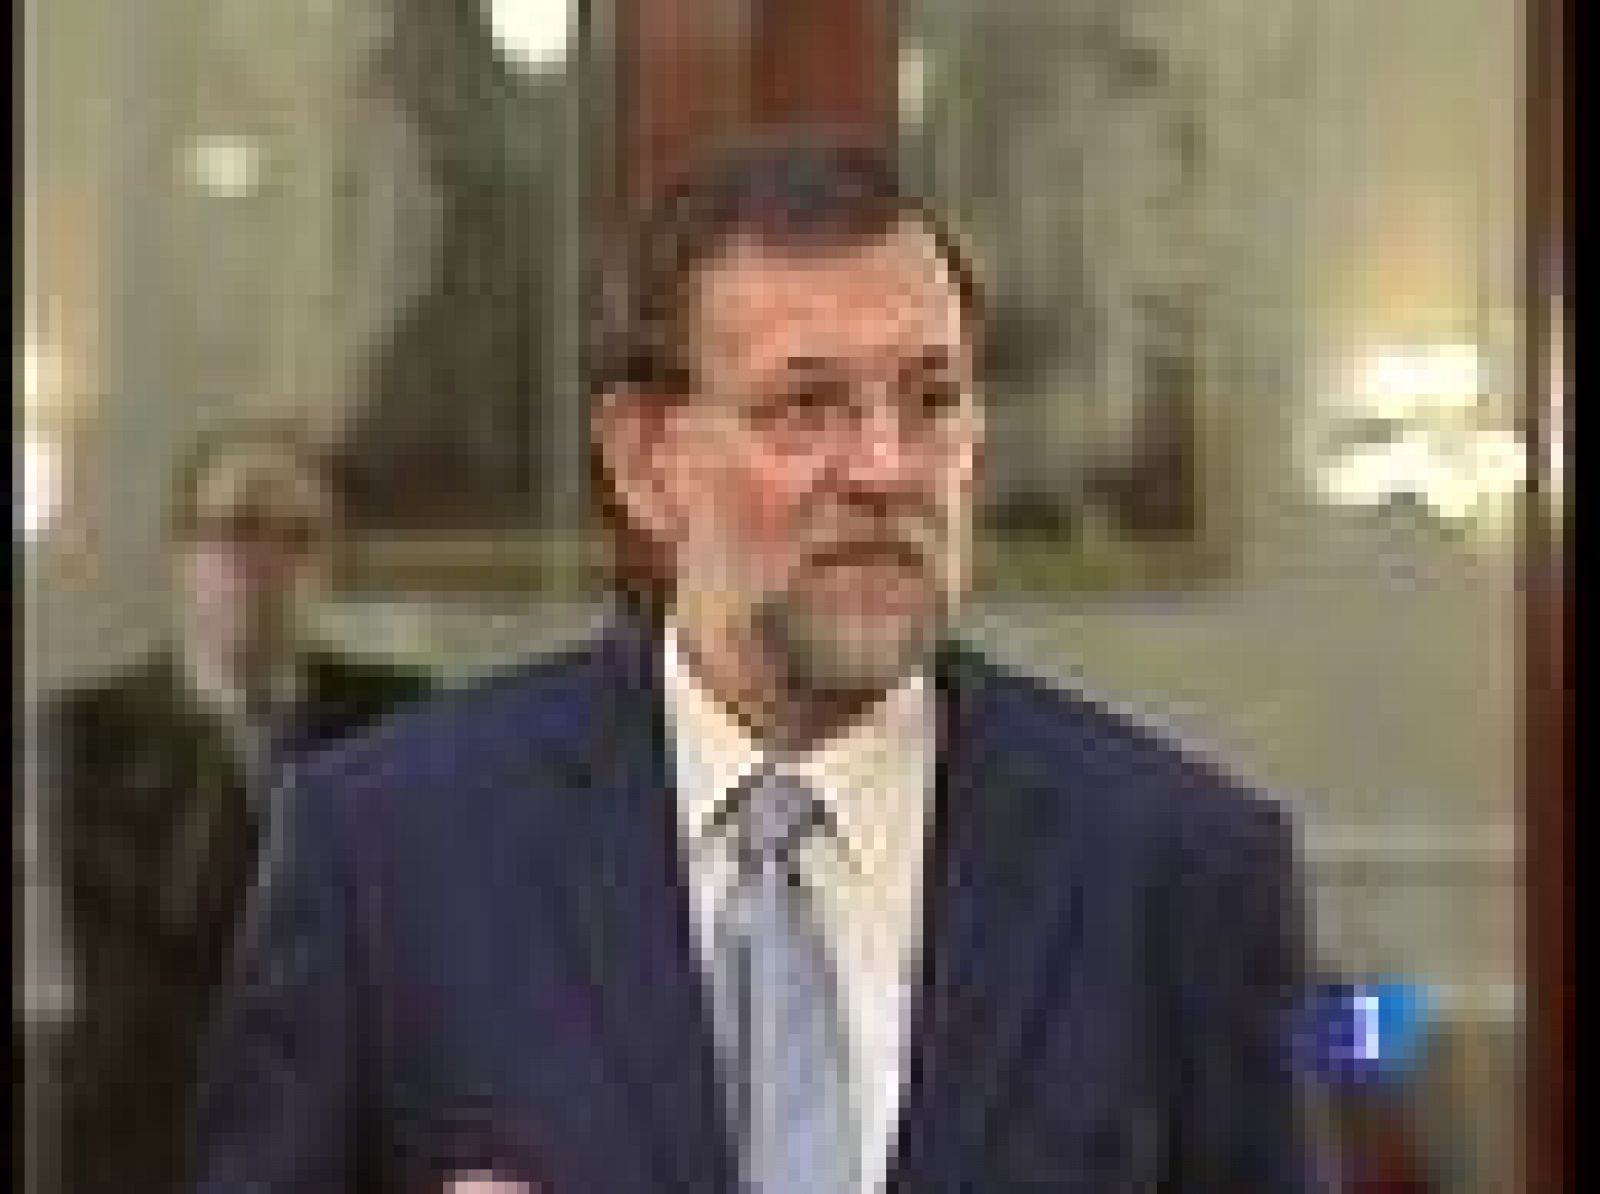 Sobre la reunión del jueves, el líder del PP ha reiterado que su partido estará aunque no ha desvelado quiénes serán sus representantes. Rajoy, que se ha reunido con su grupo en el Senado, ha dicho que apoyarán al gobierno si sus propuestas son razonables y hay una rectificación de la política económica.